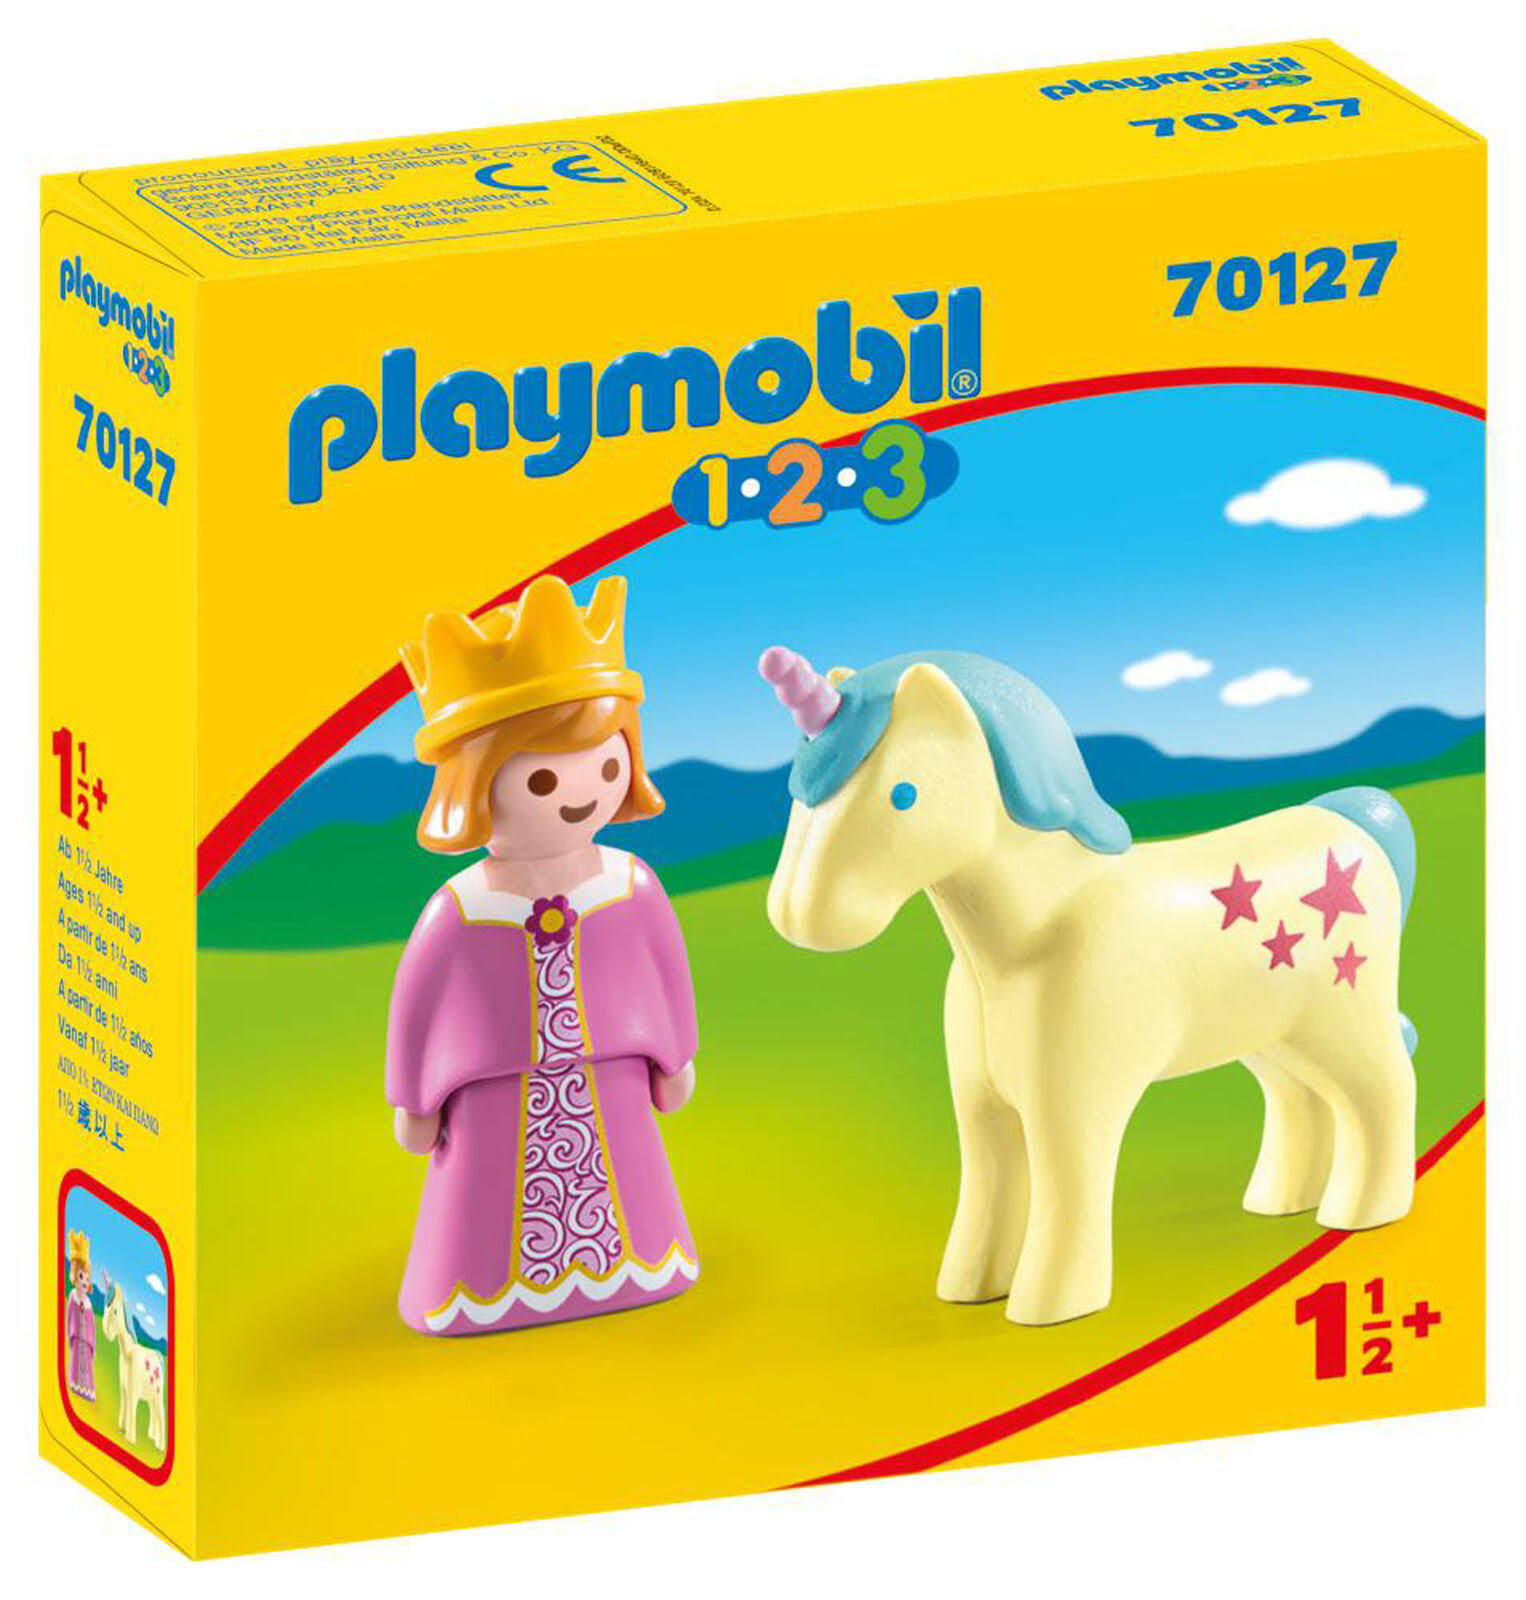 Playmobil 70127 1.2.3 Princess with Unicorn